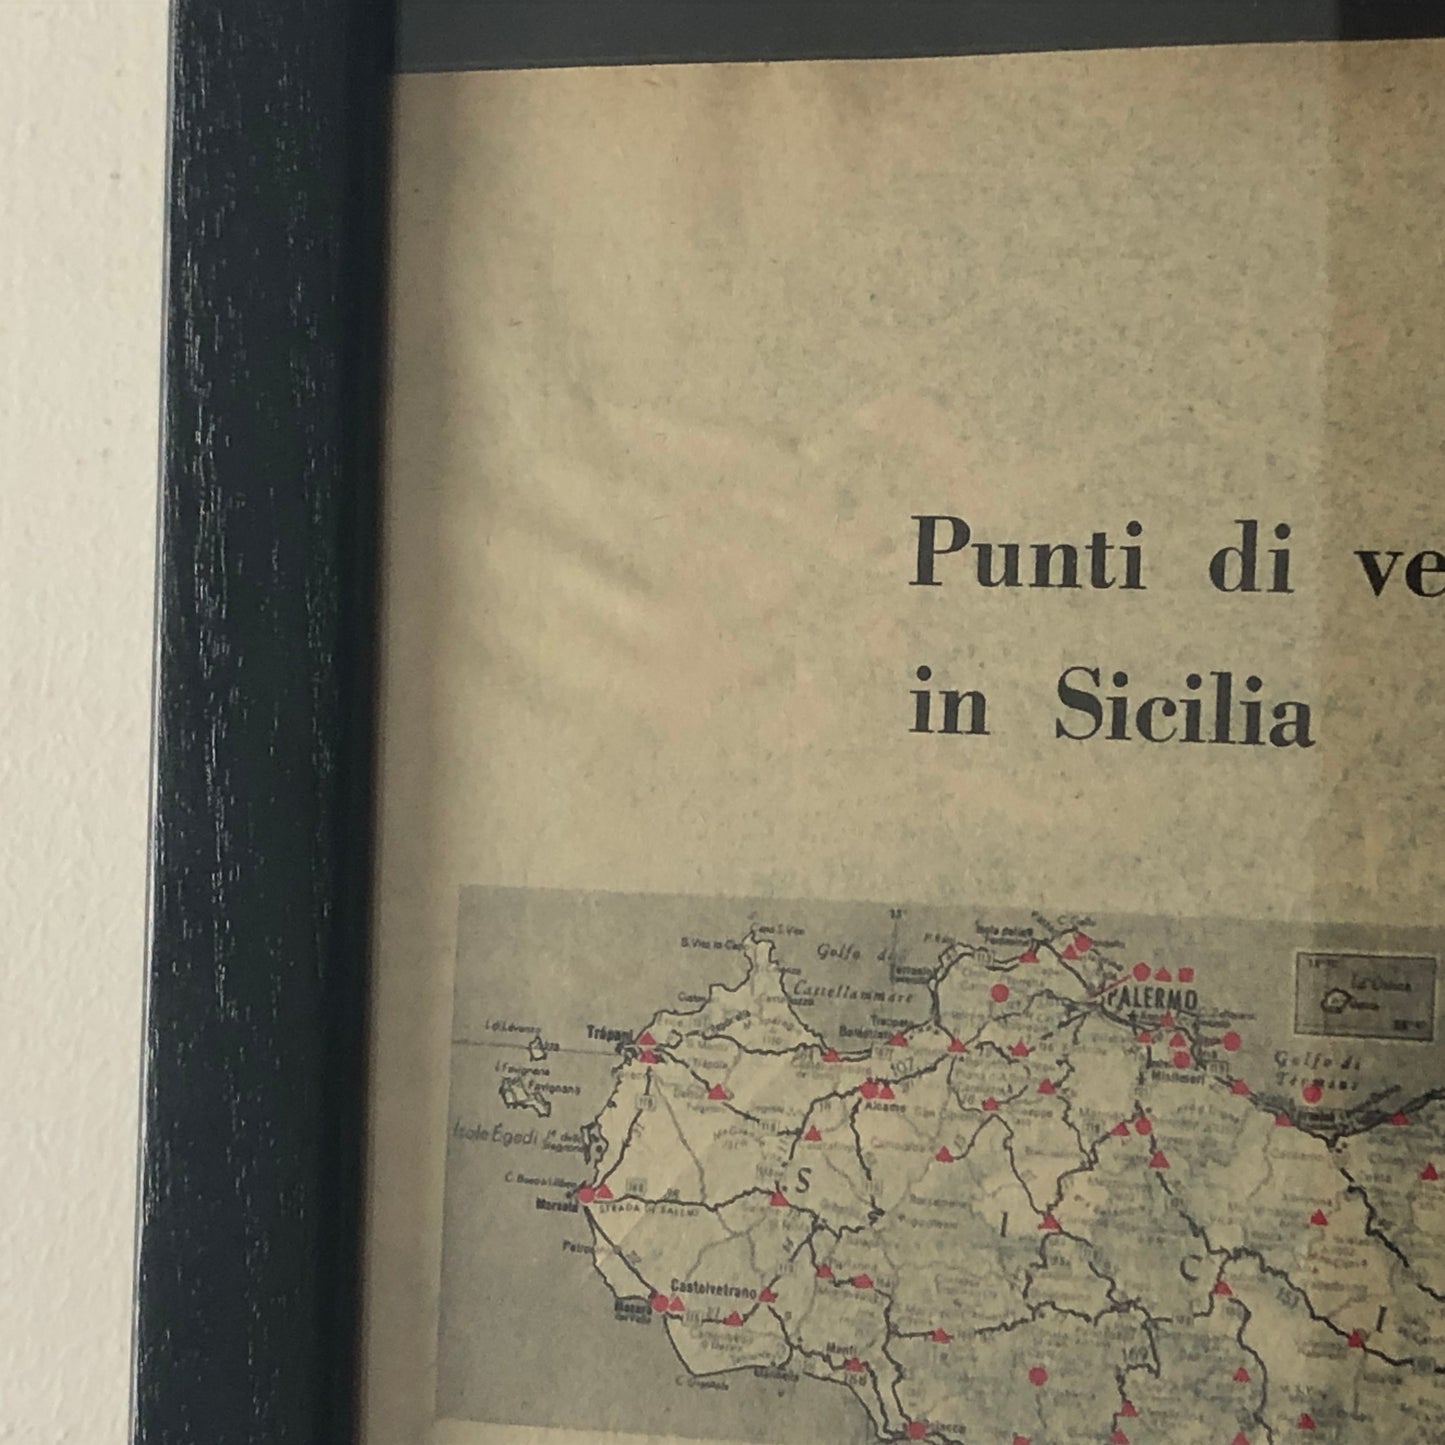 Esso, Pubblicità Anno 1960 Punti Vendita - Stazioni di Servizio Esso in Sicilia